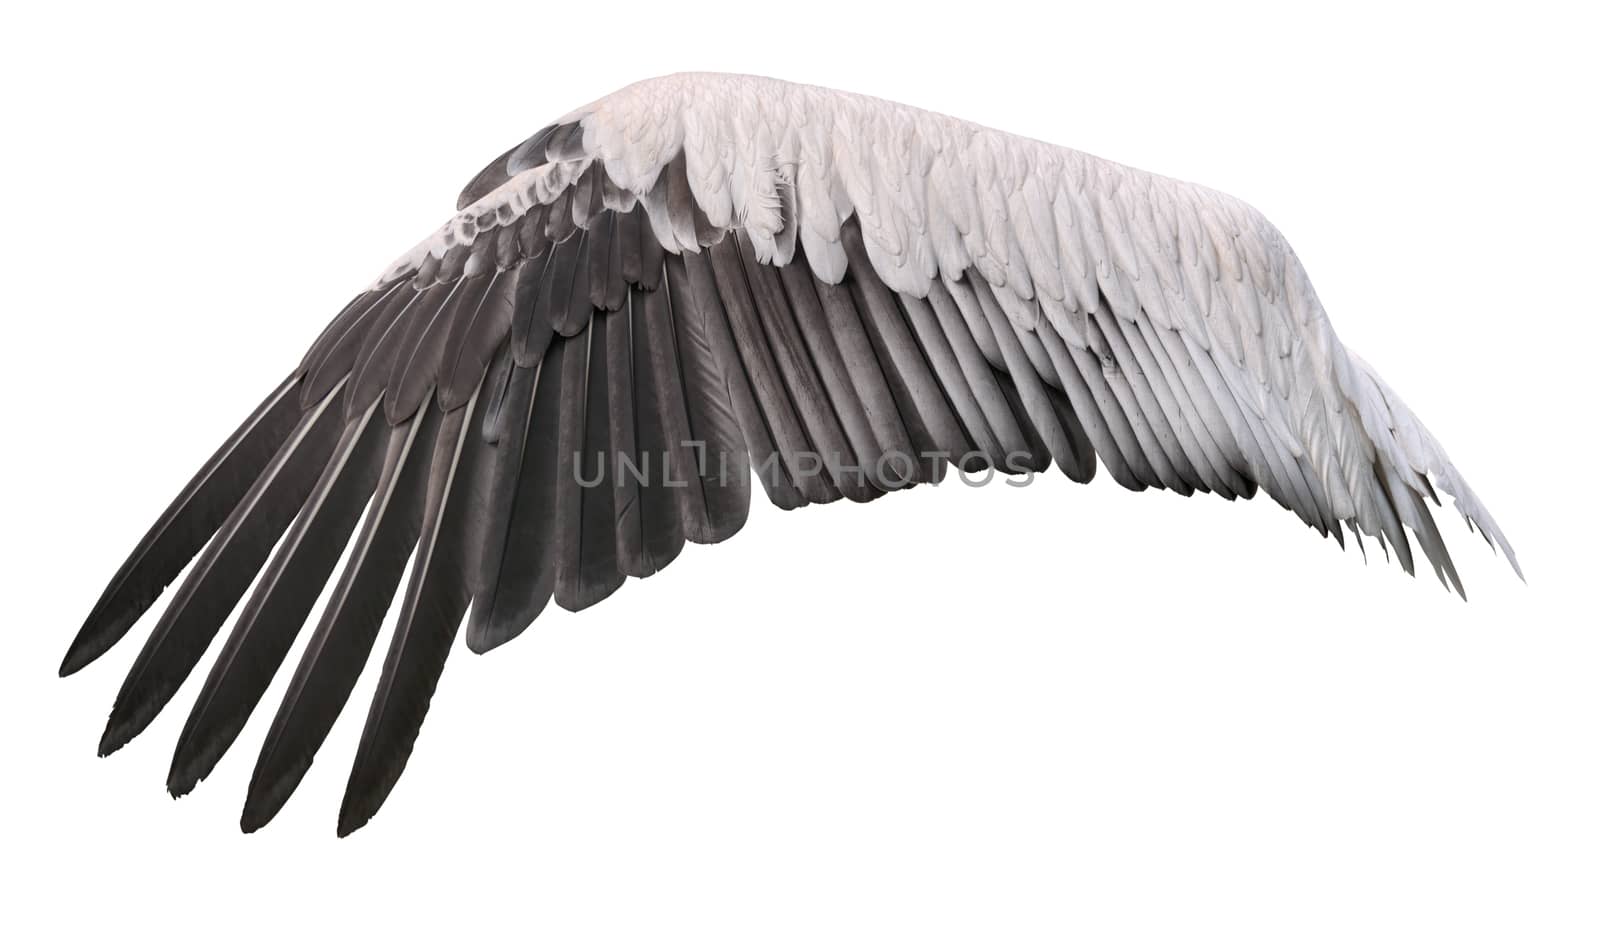 Bird wing spreaded belongs to white great pelican